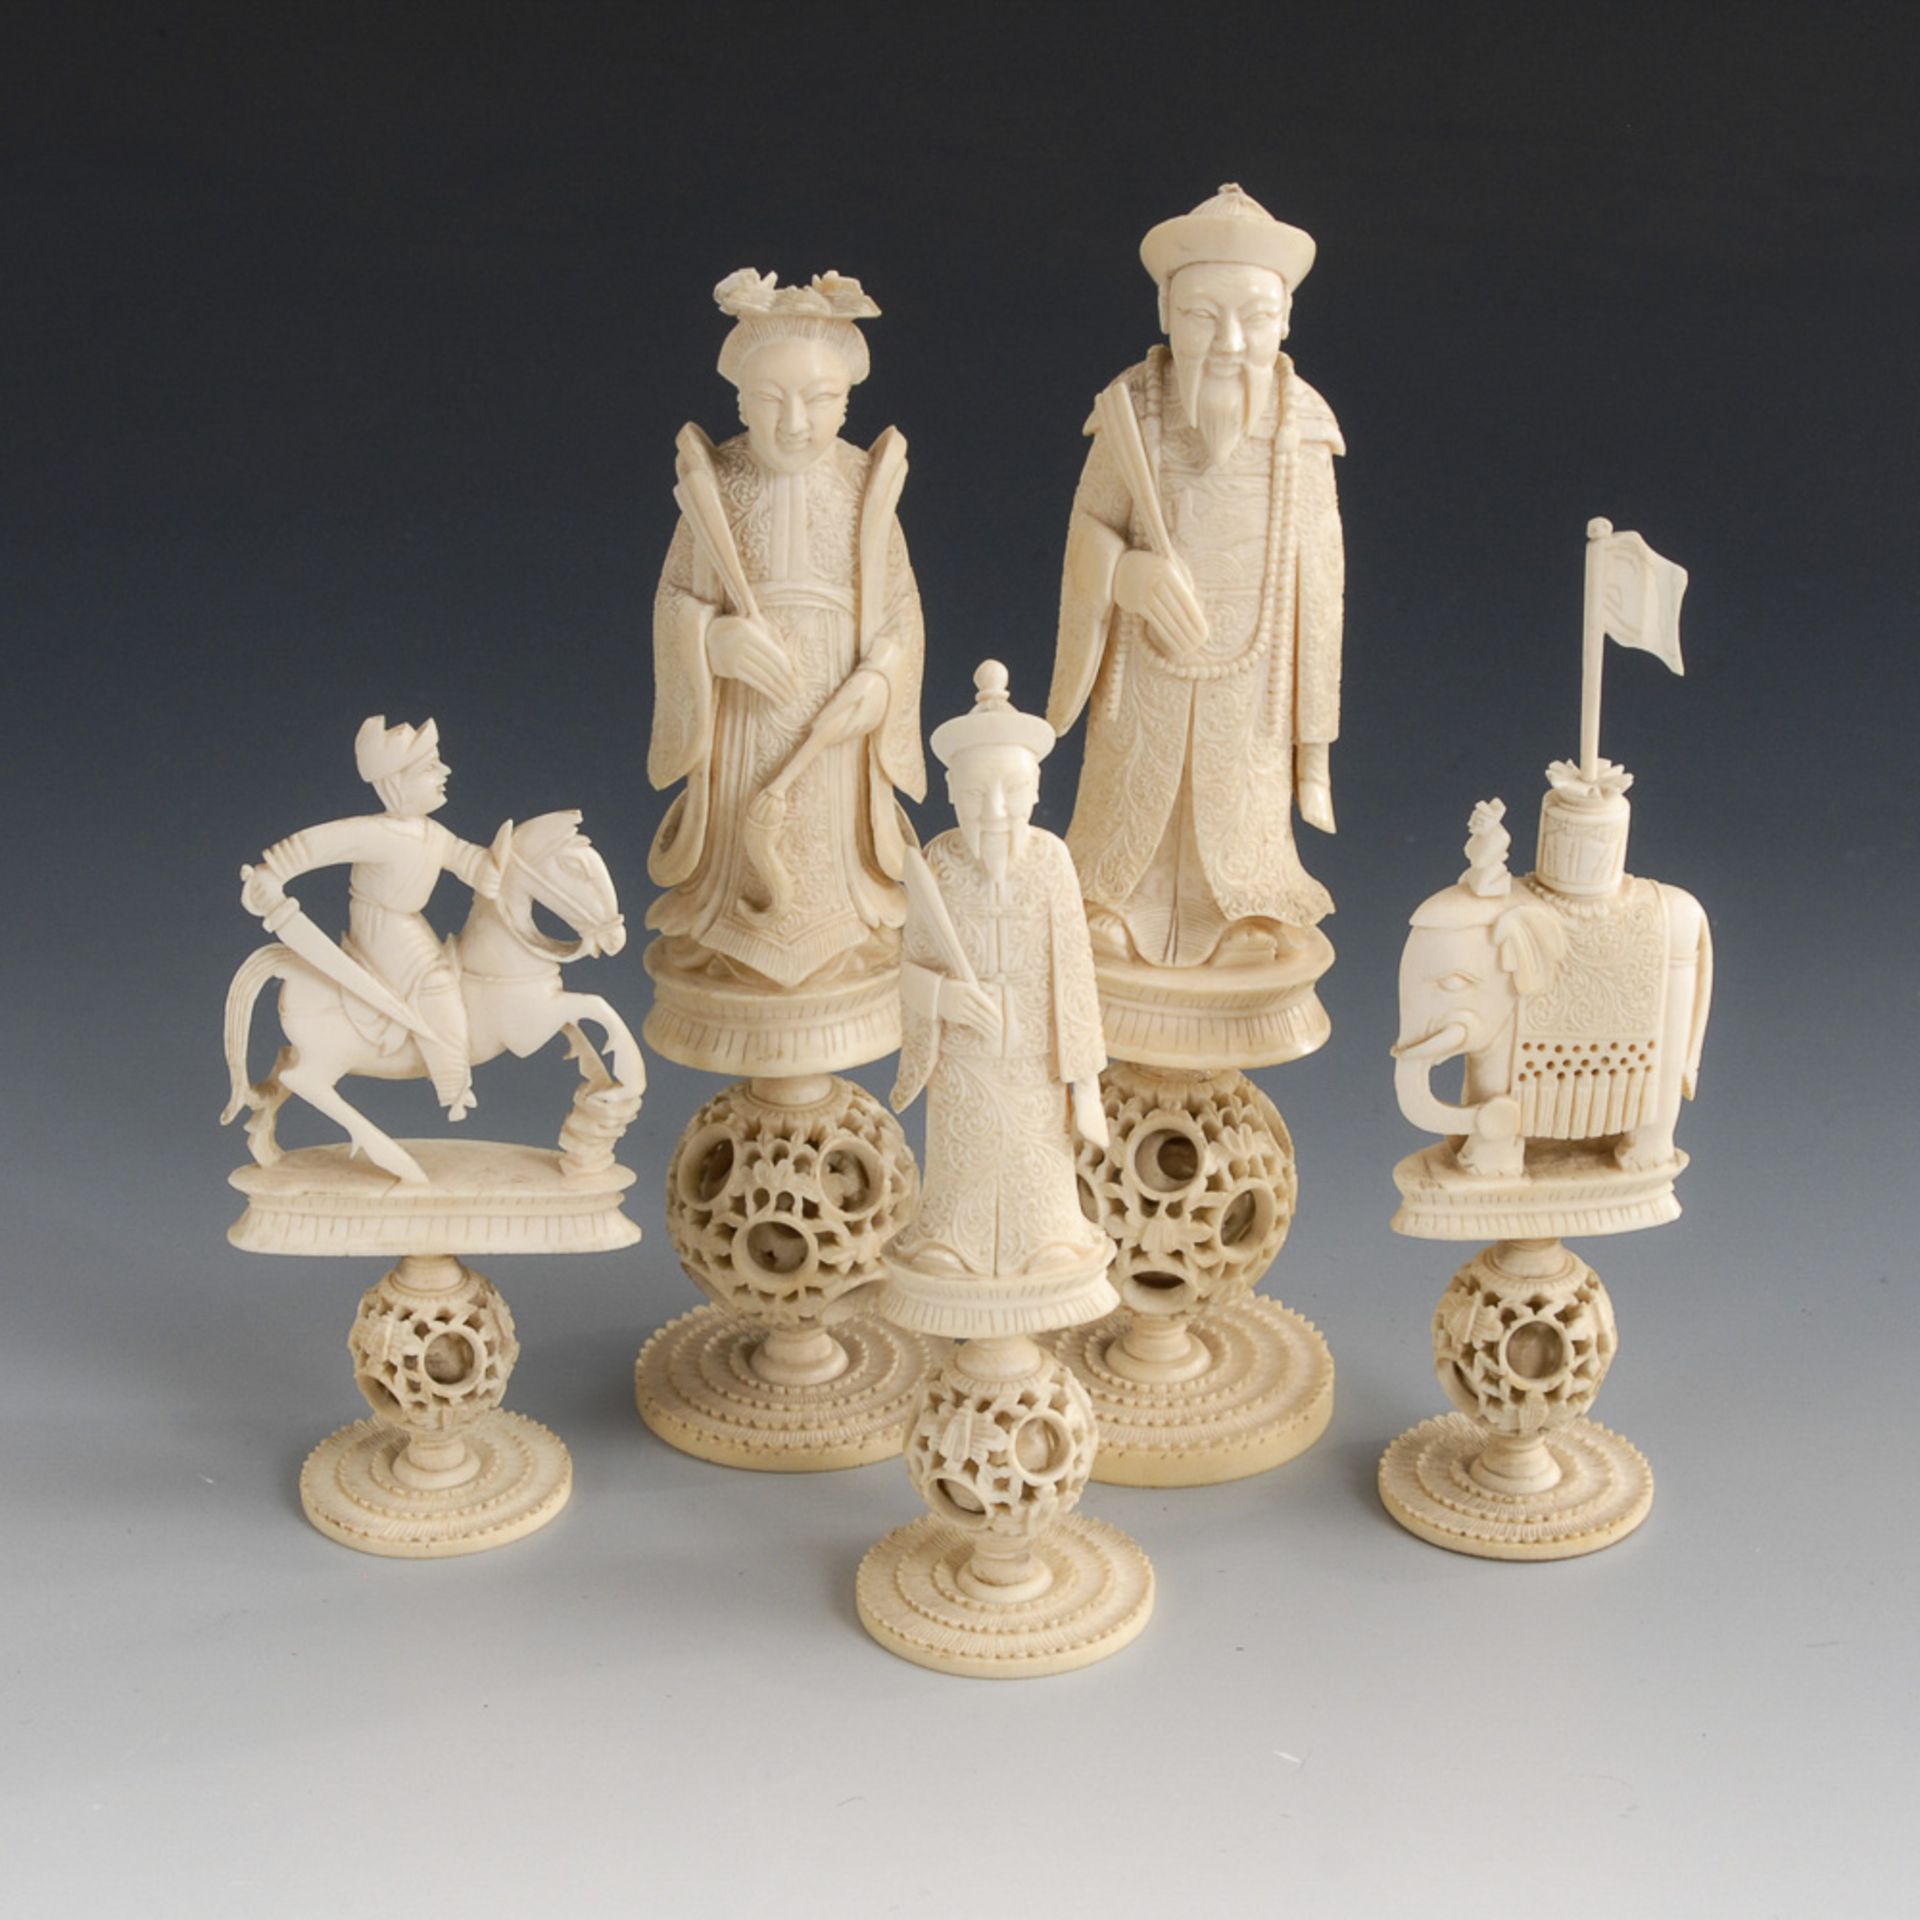 Schachspielfiguren - Elfenbein.China, um 1870, teils rot eingefärbt. Vollständig. Max. H 15 cm. - Bild 3 aus 4